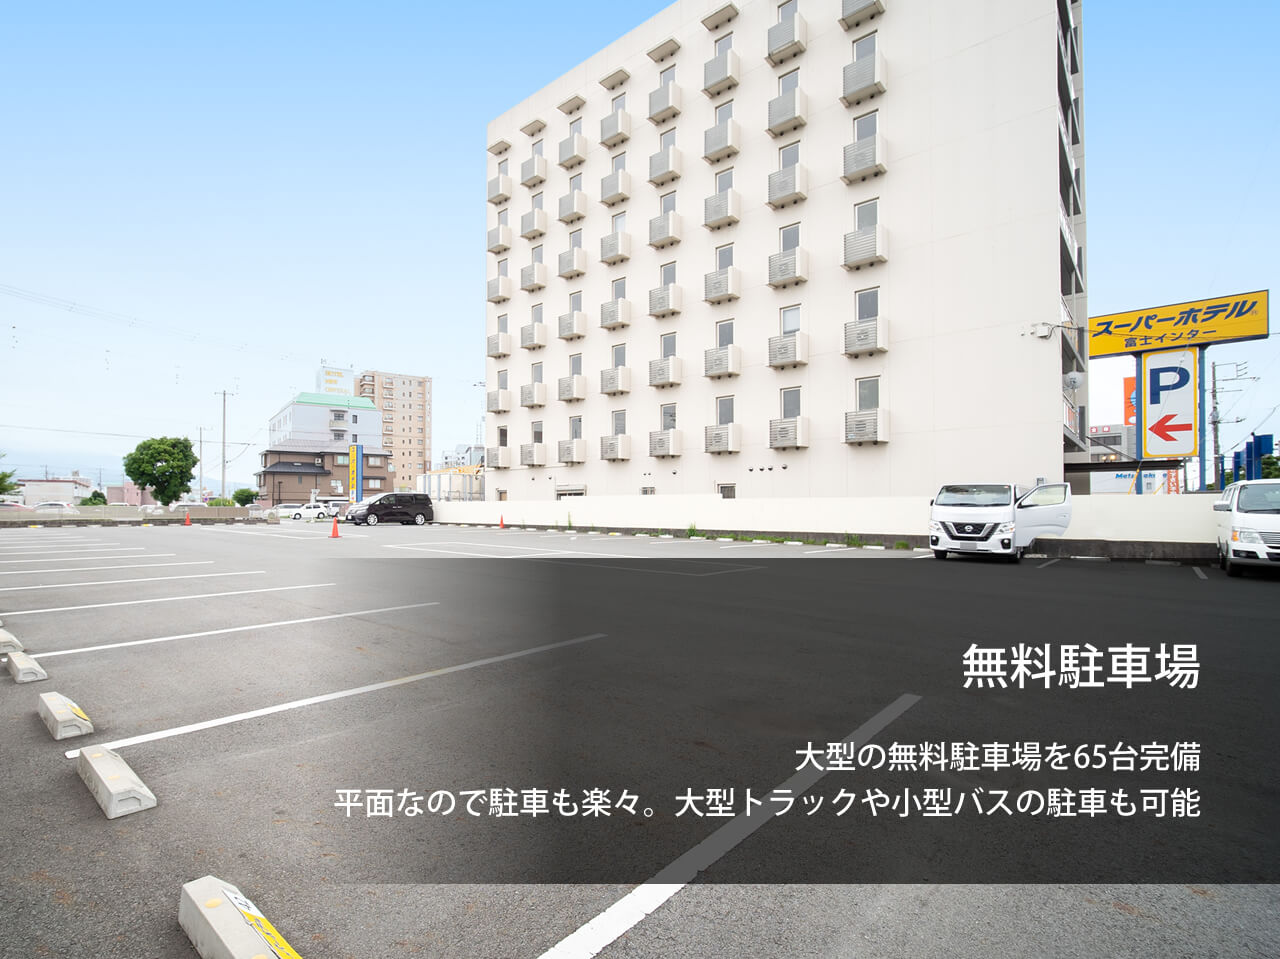 【公式最安】天然温泉 かぐやの湯 スーパーホテル富士インター 静岡県富士市のビジネスホテル